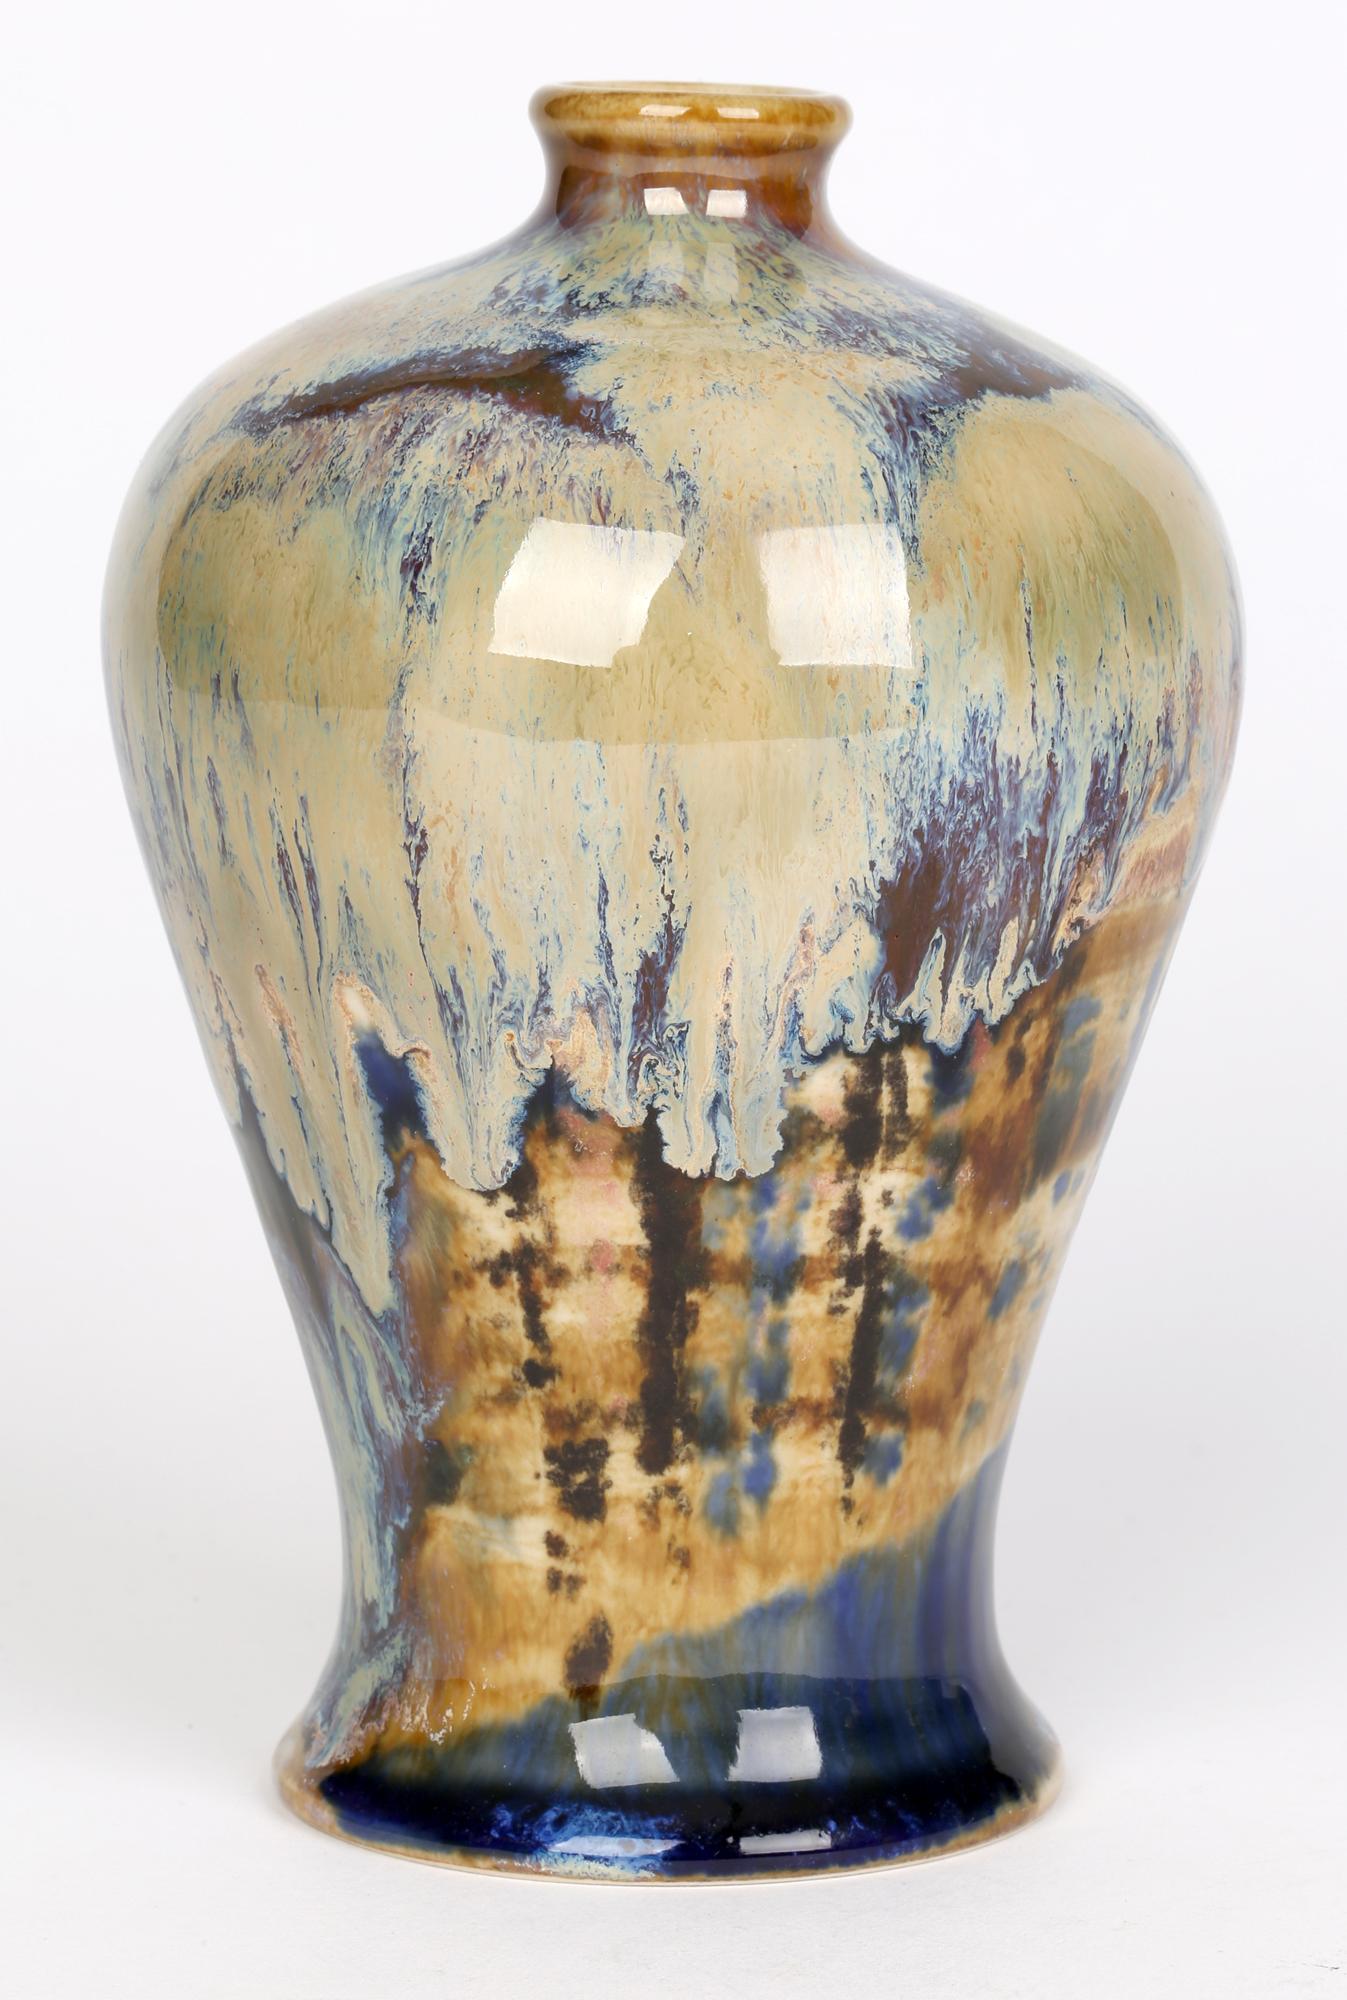 Superbe vase Baluster en poterie d'art Cobridge cuite à haute température, conçu par Andrew Hull et daté de 2004. Ce vase en grès très travaillé est de forme balustre, avec un corps inférieur à jupe et un pied étroit et arrondi, ainsi qu'un col et